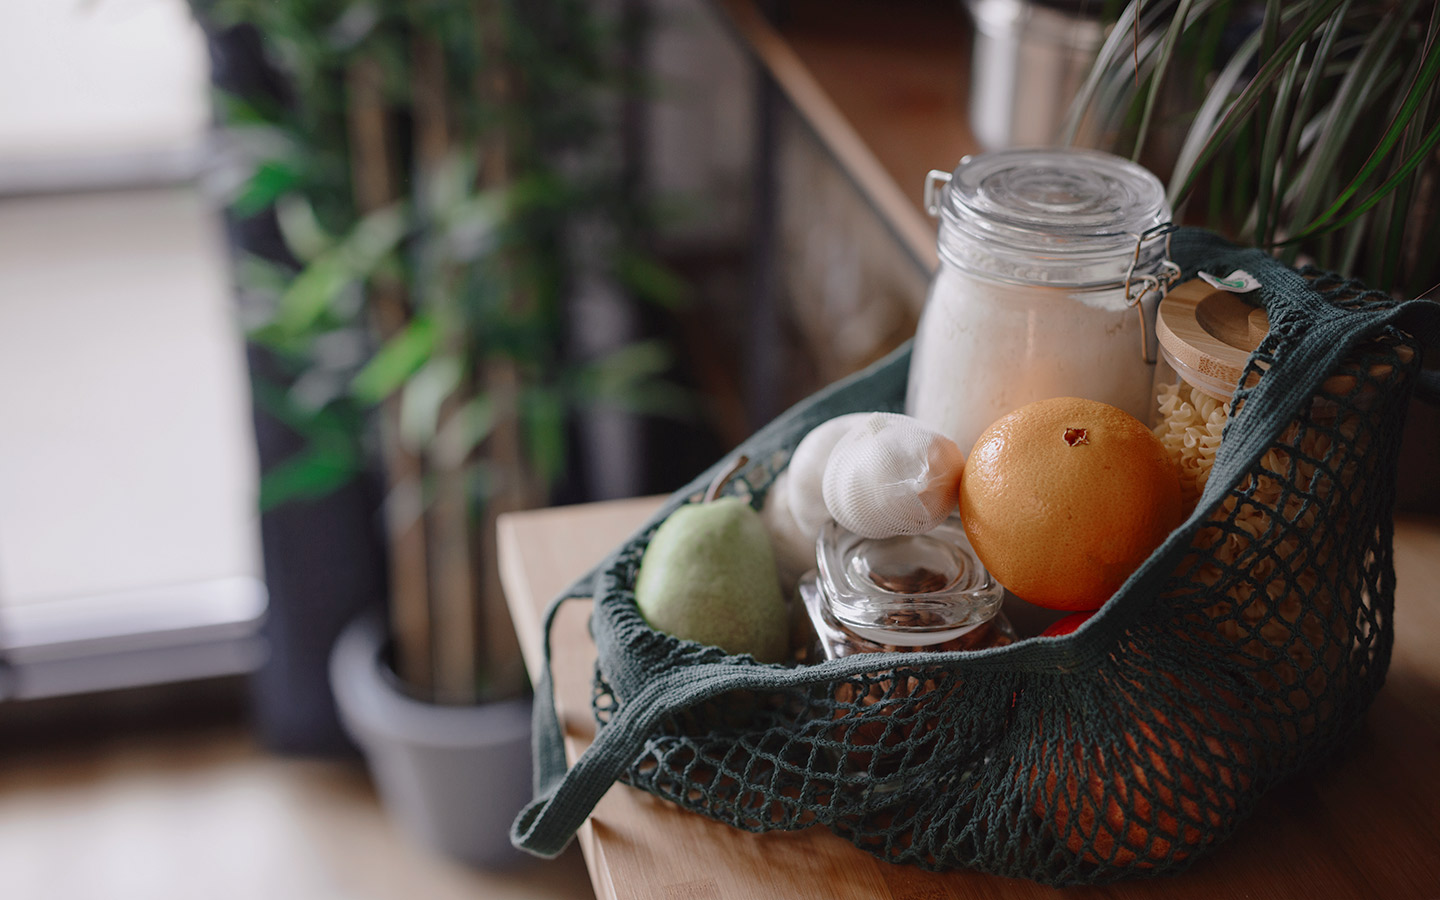 Foto: Ein Korb mit Lebensmitteln wie Orange oder Weizenmehl, die Allergien auslösen können